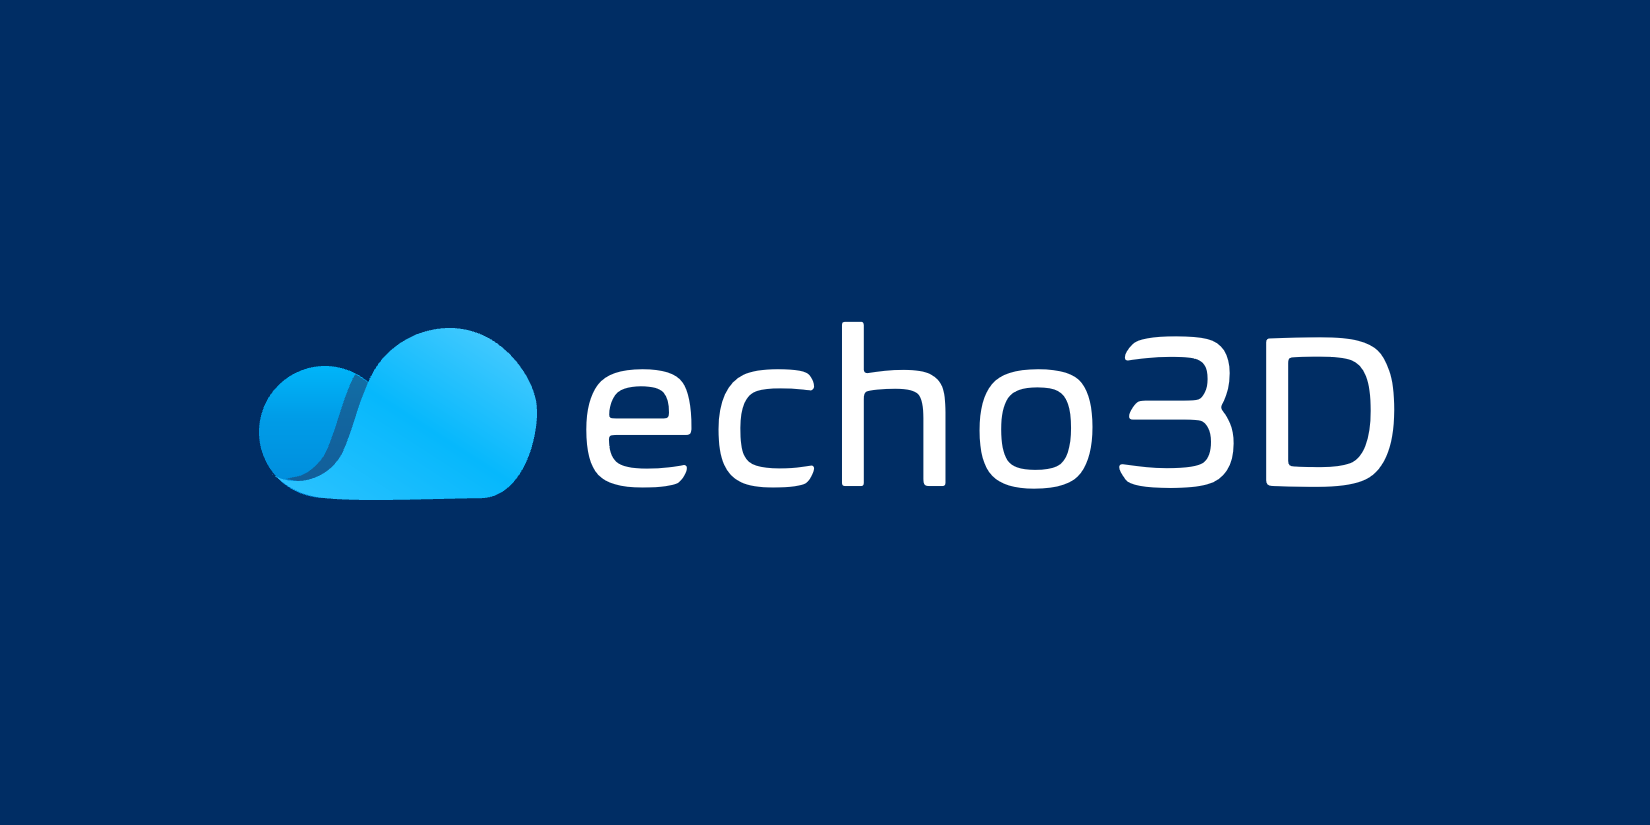 Echo3D